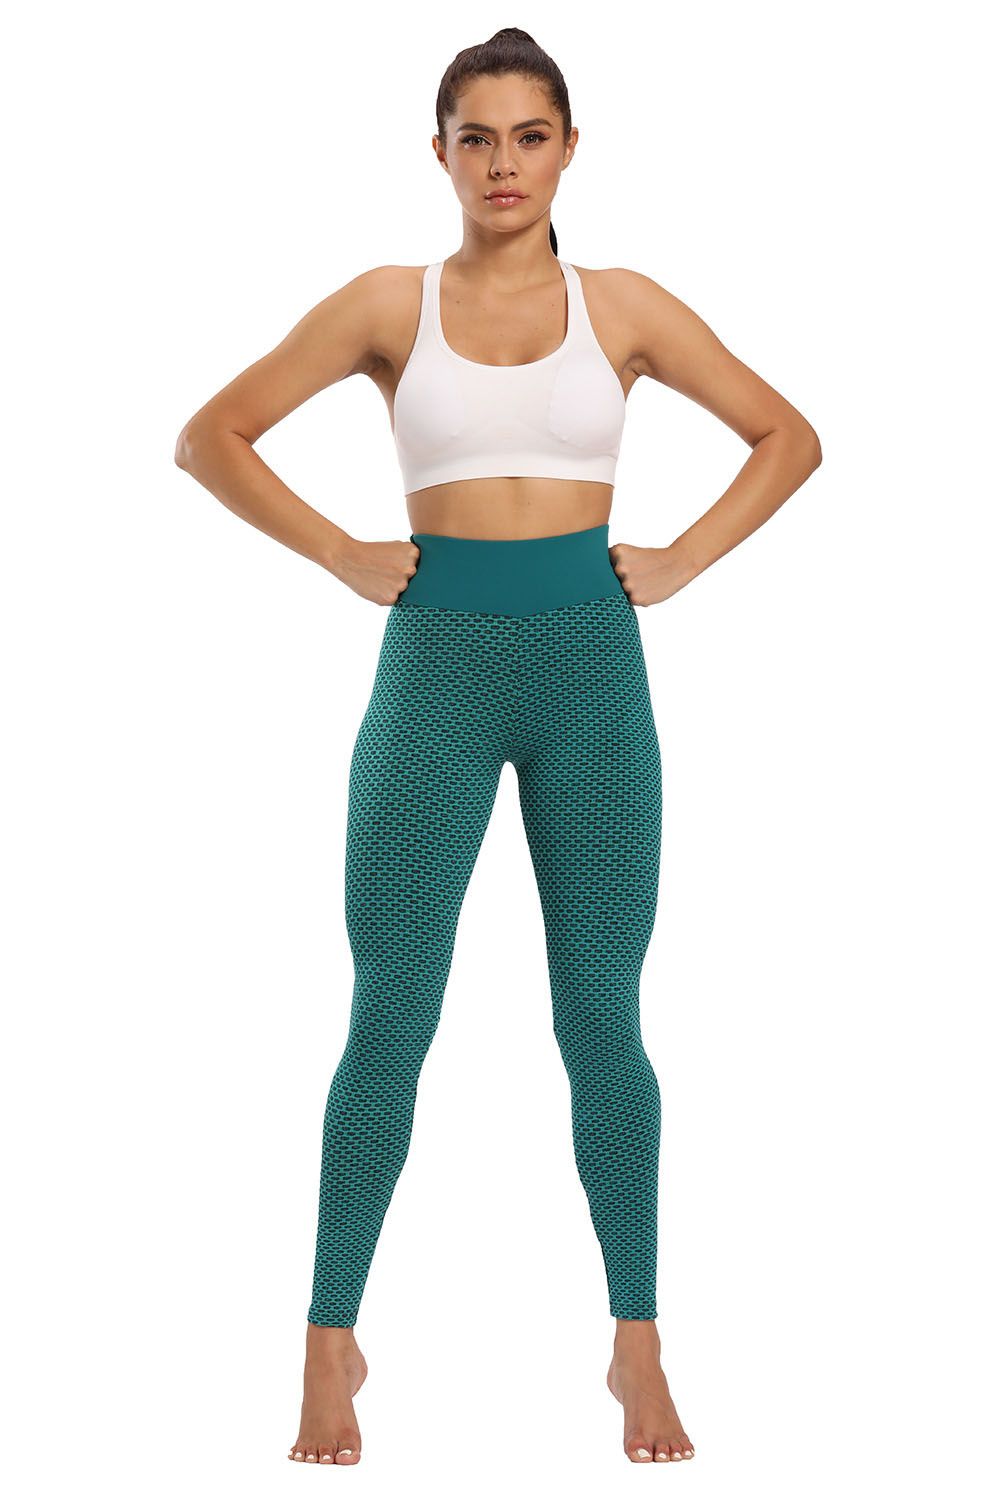 Ladies Fitness Pantalones deportes Ocio de ocio Levantamiento de la cadera Pantalones de yoga Pilates Pant 